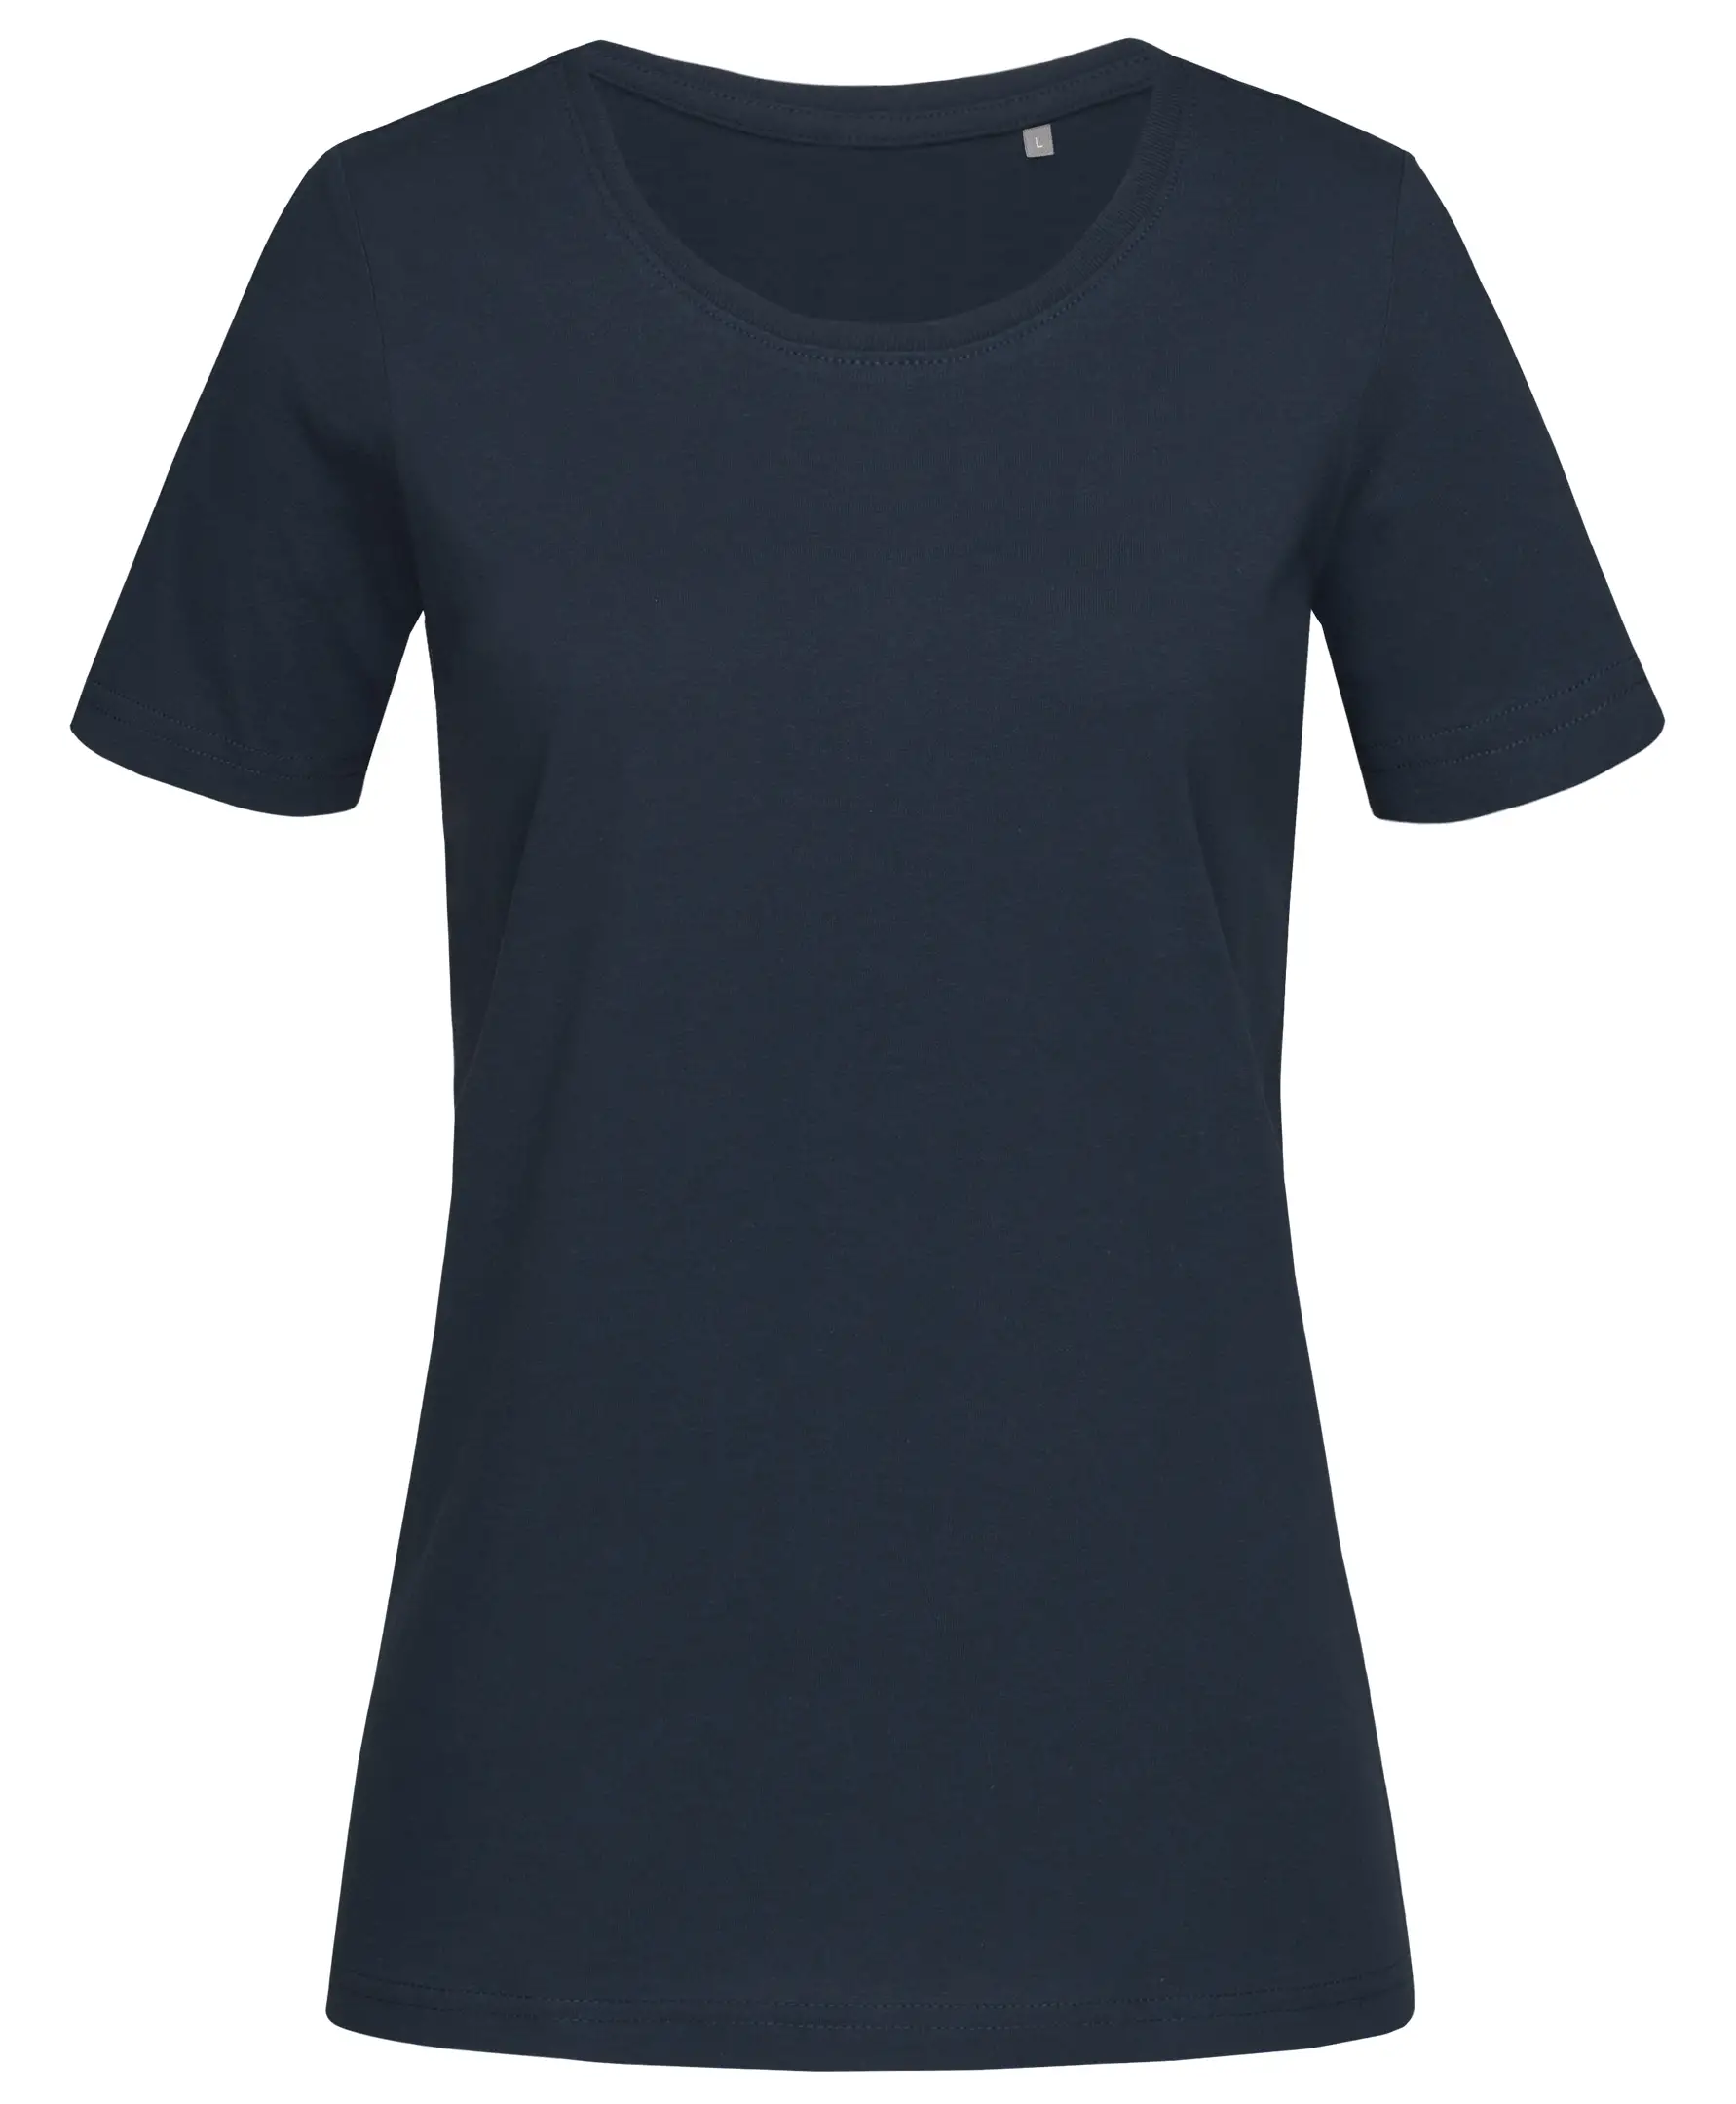 T-Shirt Donna Manica Corta Cotone Personalizzata - Stedman